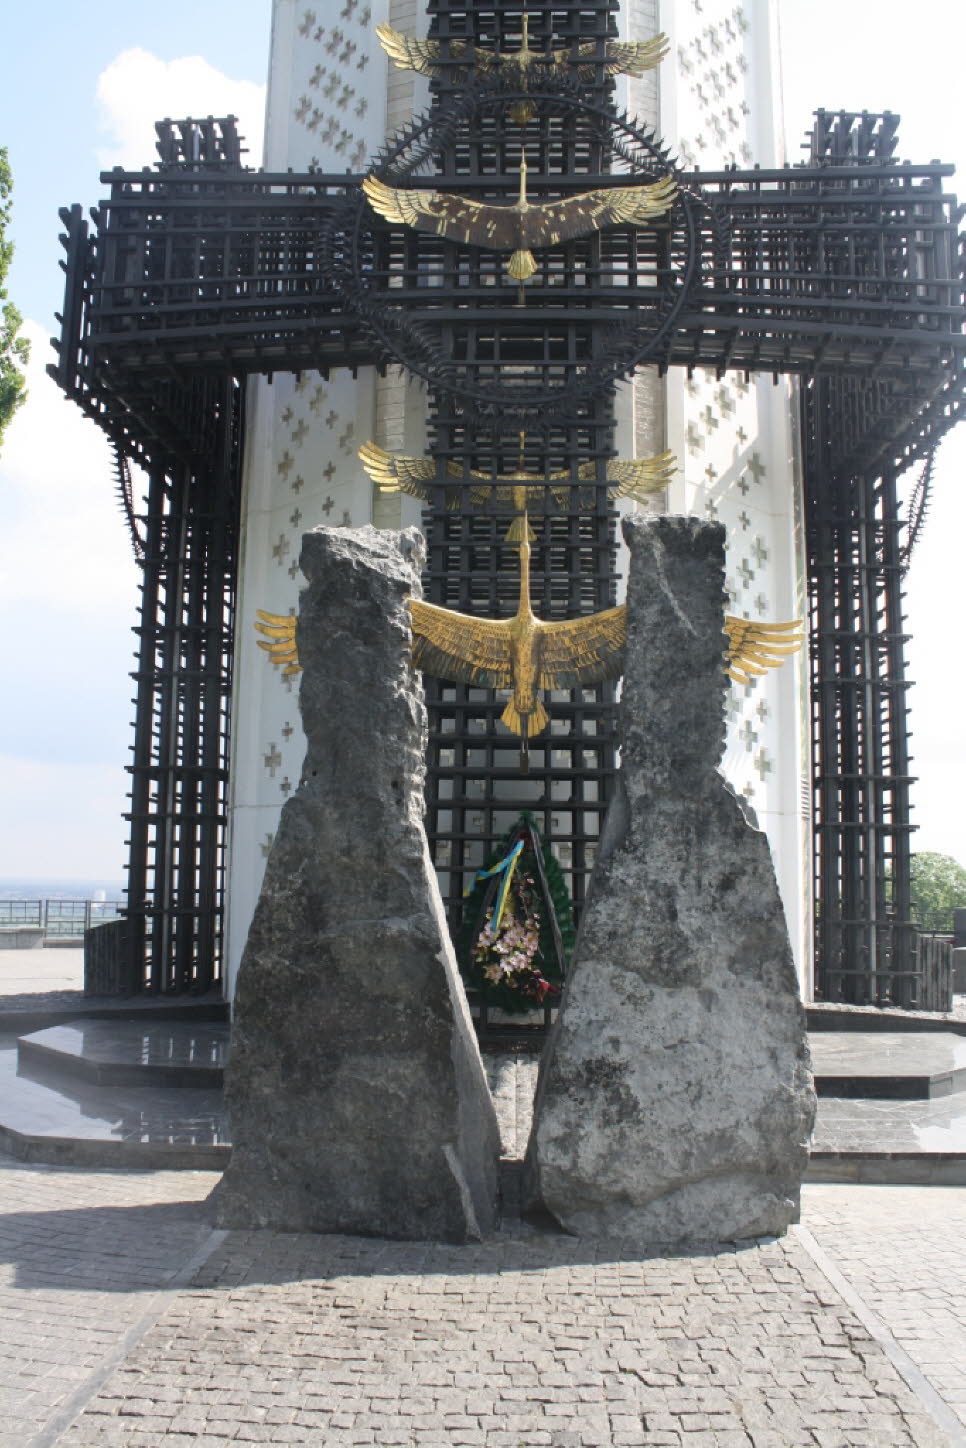 Denkmal Holodomor: Auf die sowjetischen Verbrechen folgte Juni 1941 jene der NS-Herrschaft, die die Ukraine zu einem Hauptort des Holocaust machte. Es erscheint fragwürdig, ob die von der Sowjetunion verursachte Hungersnot dem Genozid der Nazi gleichgeset